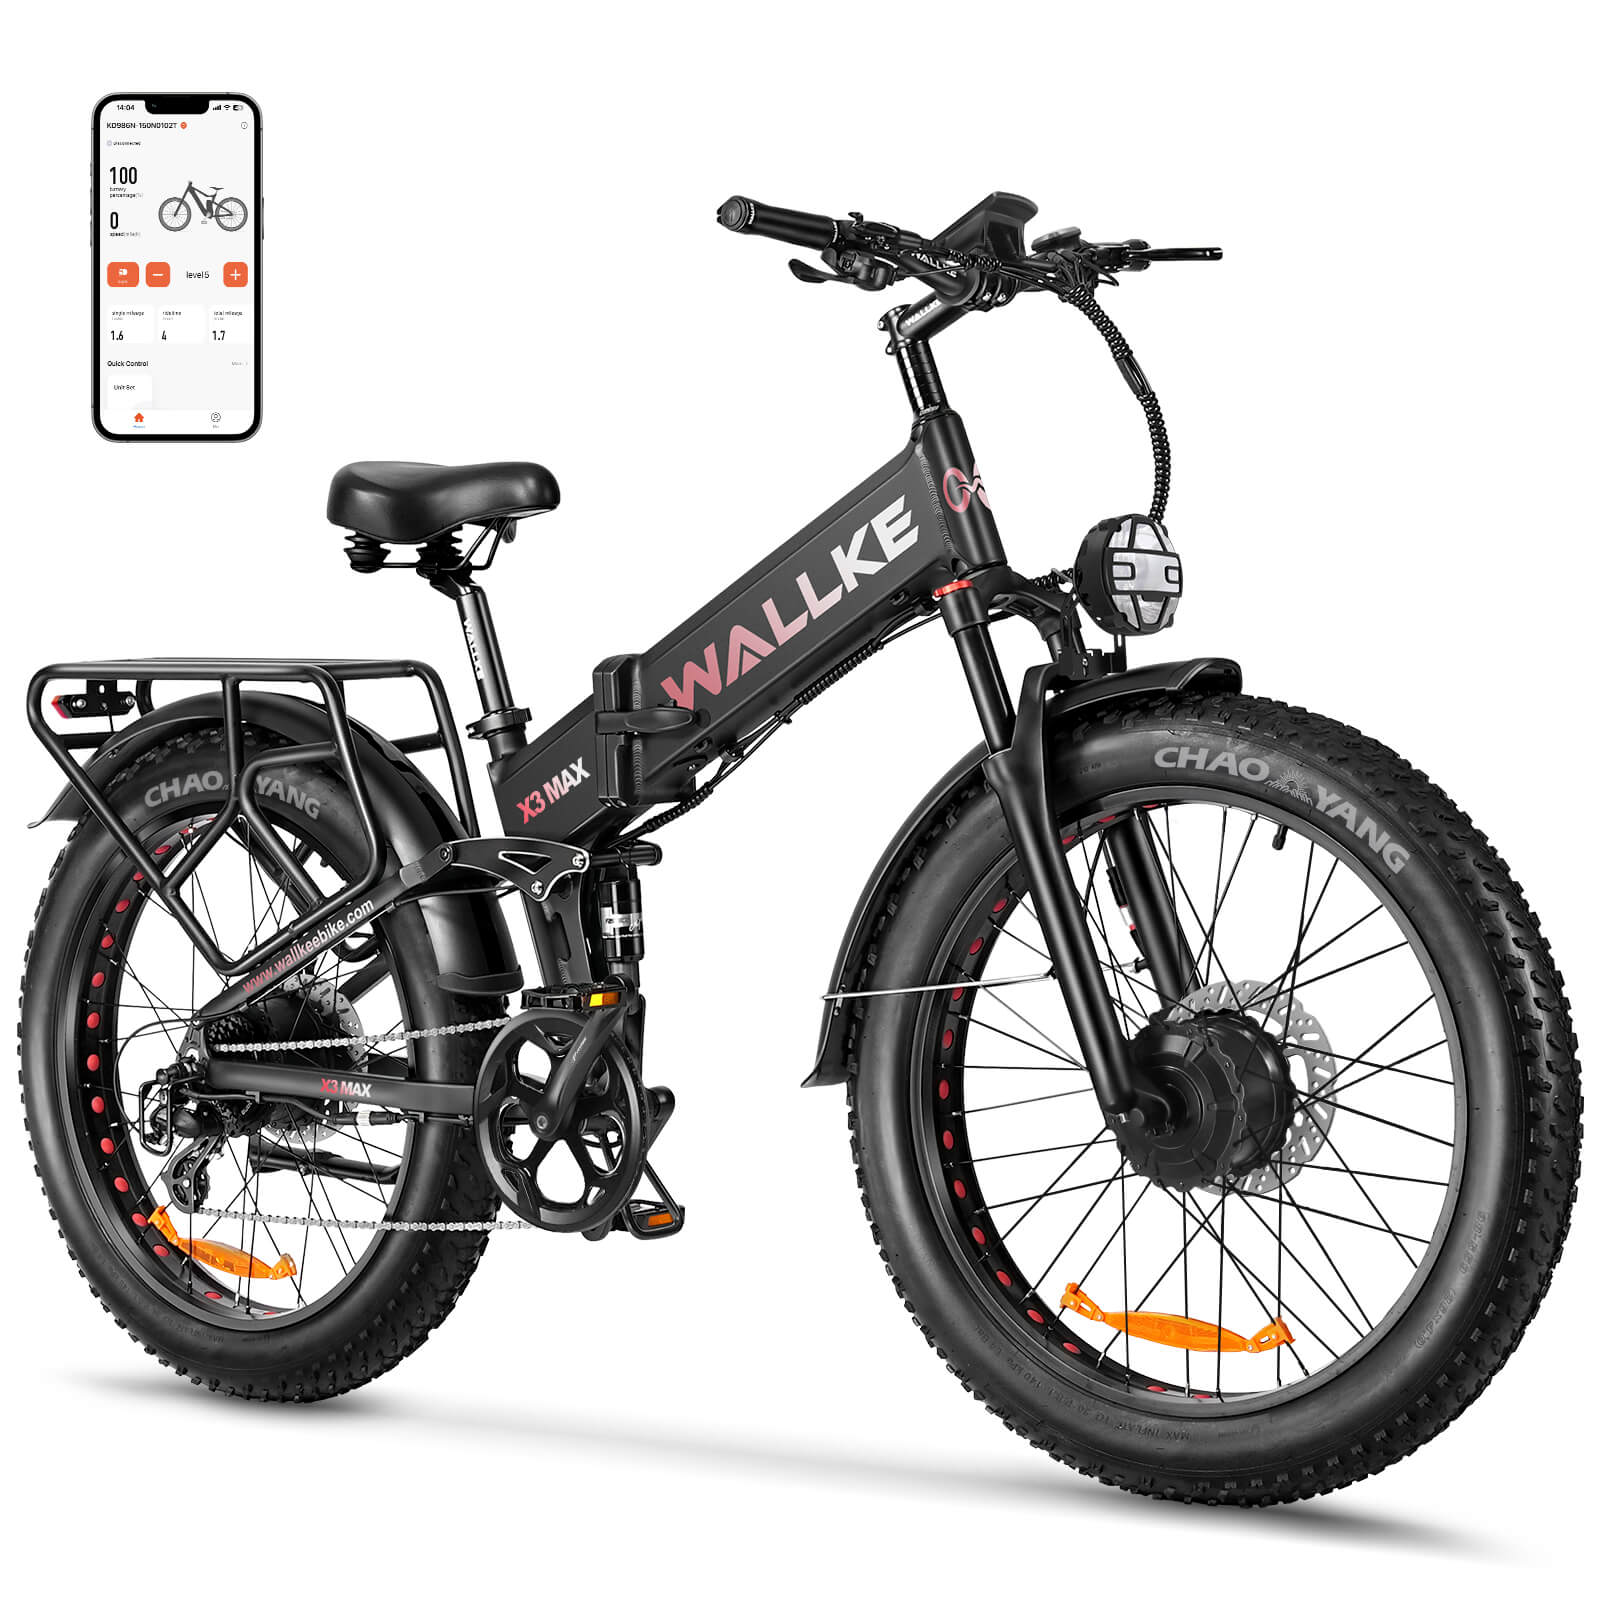 stowawey bici techo kickstarter  Bike storage solutions, Bike